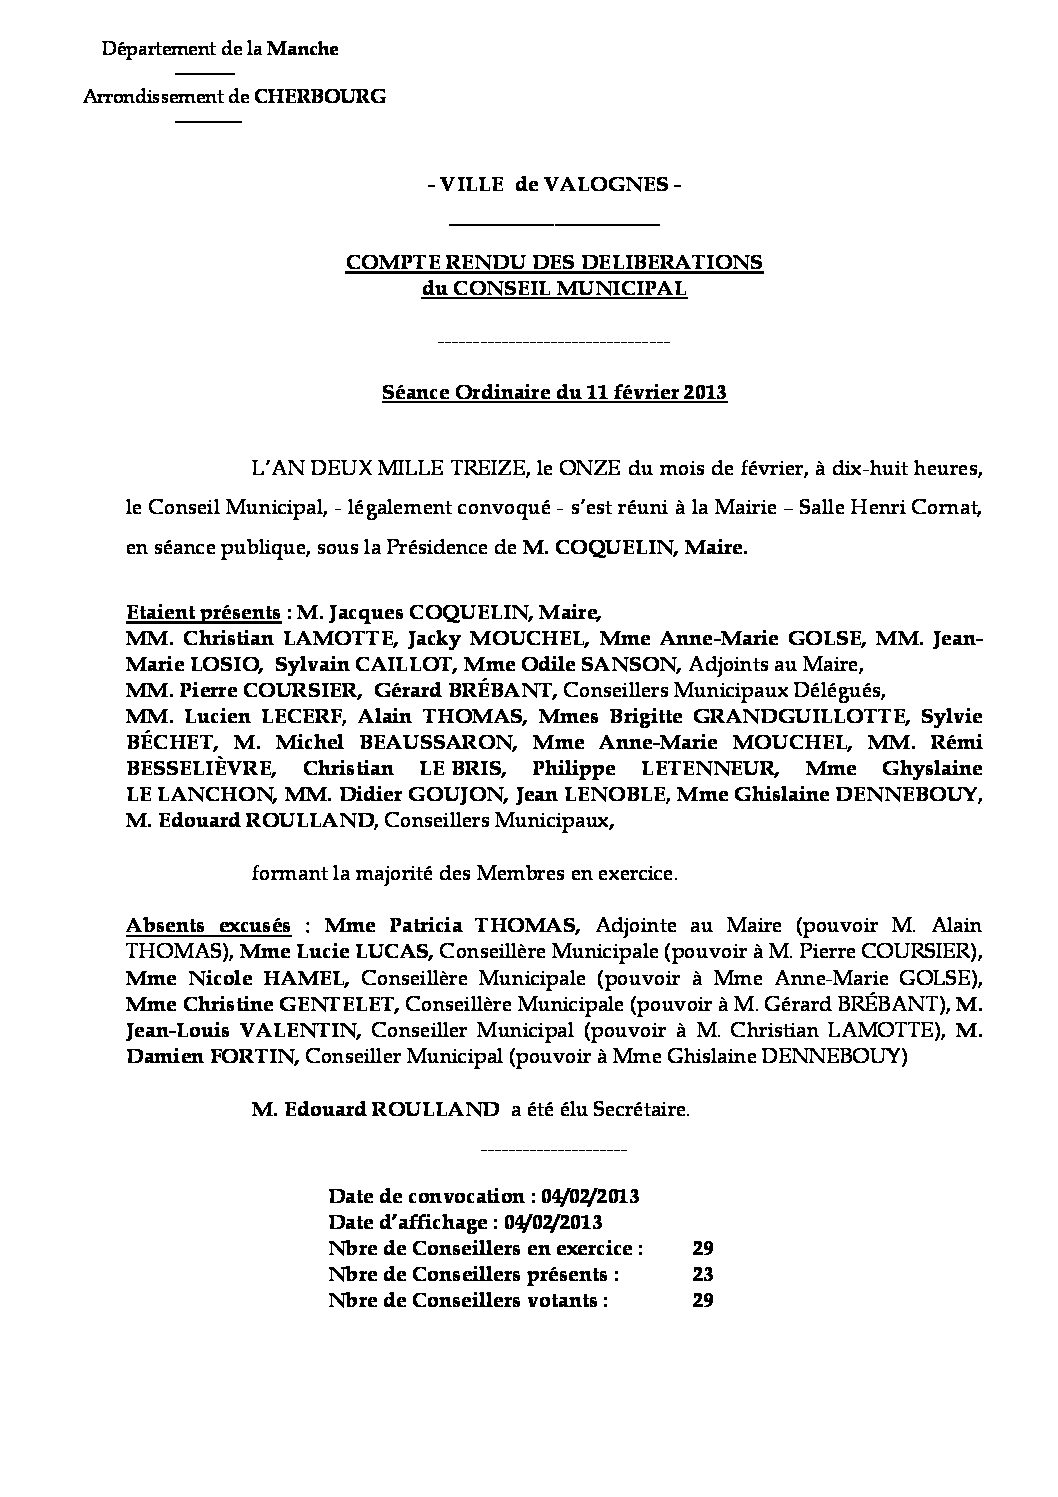 Extrait du registre des délibérations du 11-02-2013 - Compte rendu des questions soumises à délibération lors de la séance du Conseil Municipal du 11 février 2013